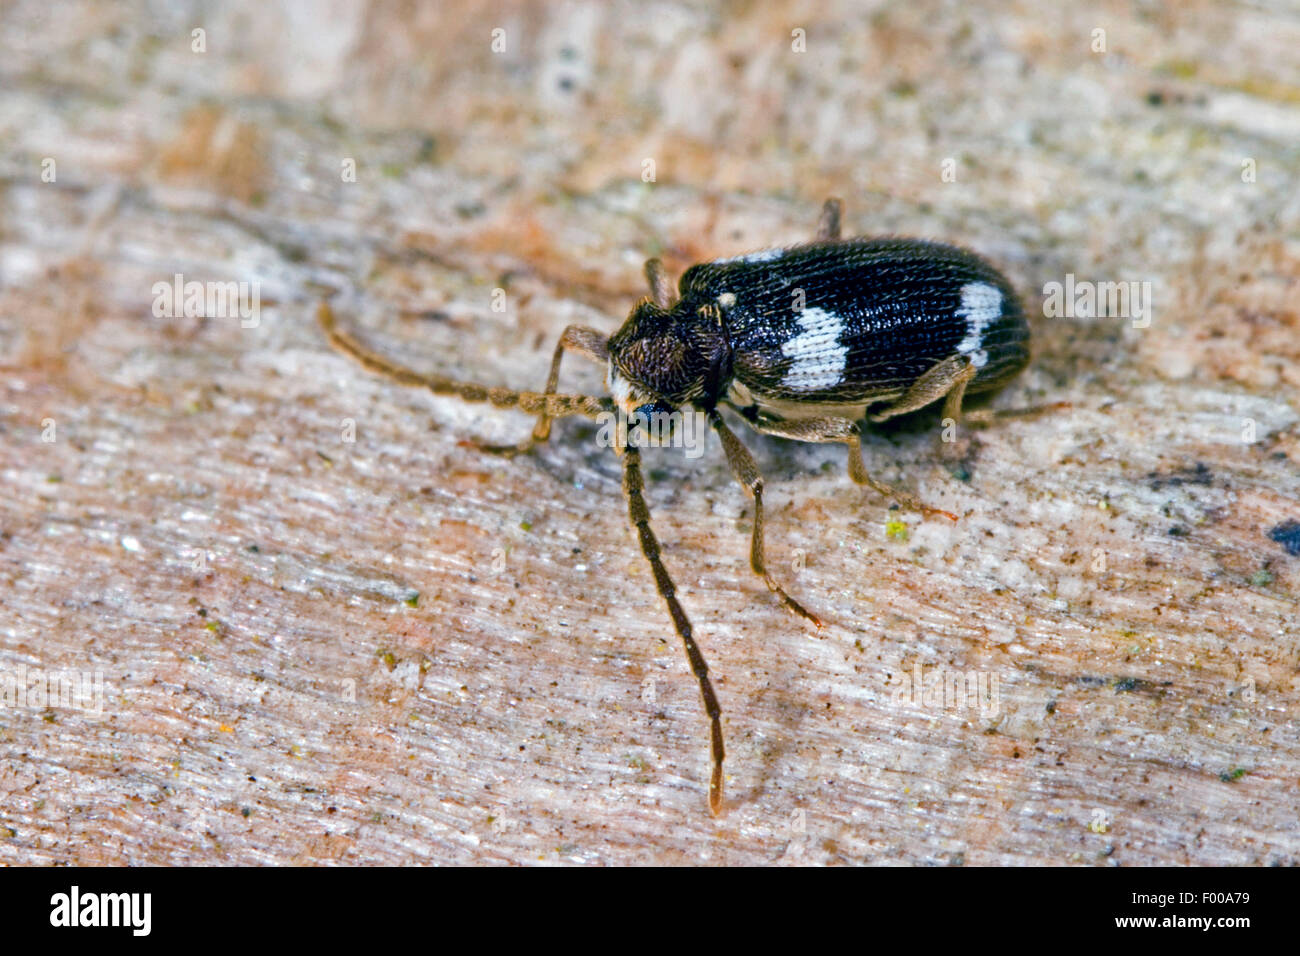 Spider beetle (Ptinus sexpunctatus), on wood, Germany Stock Photo